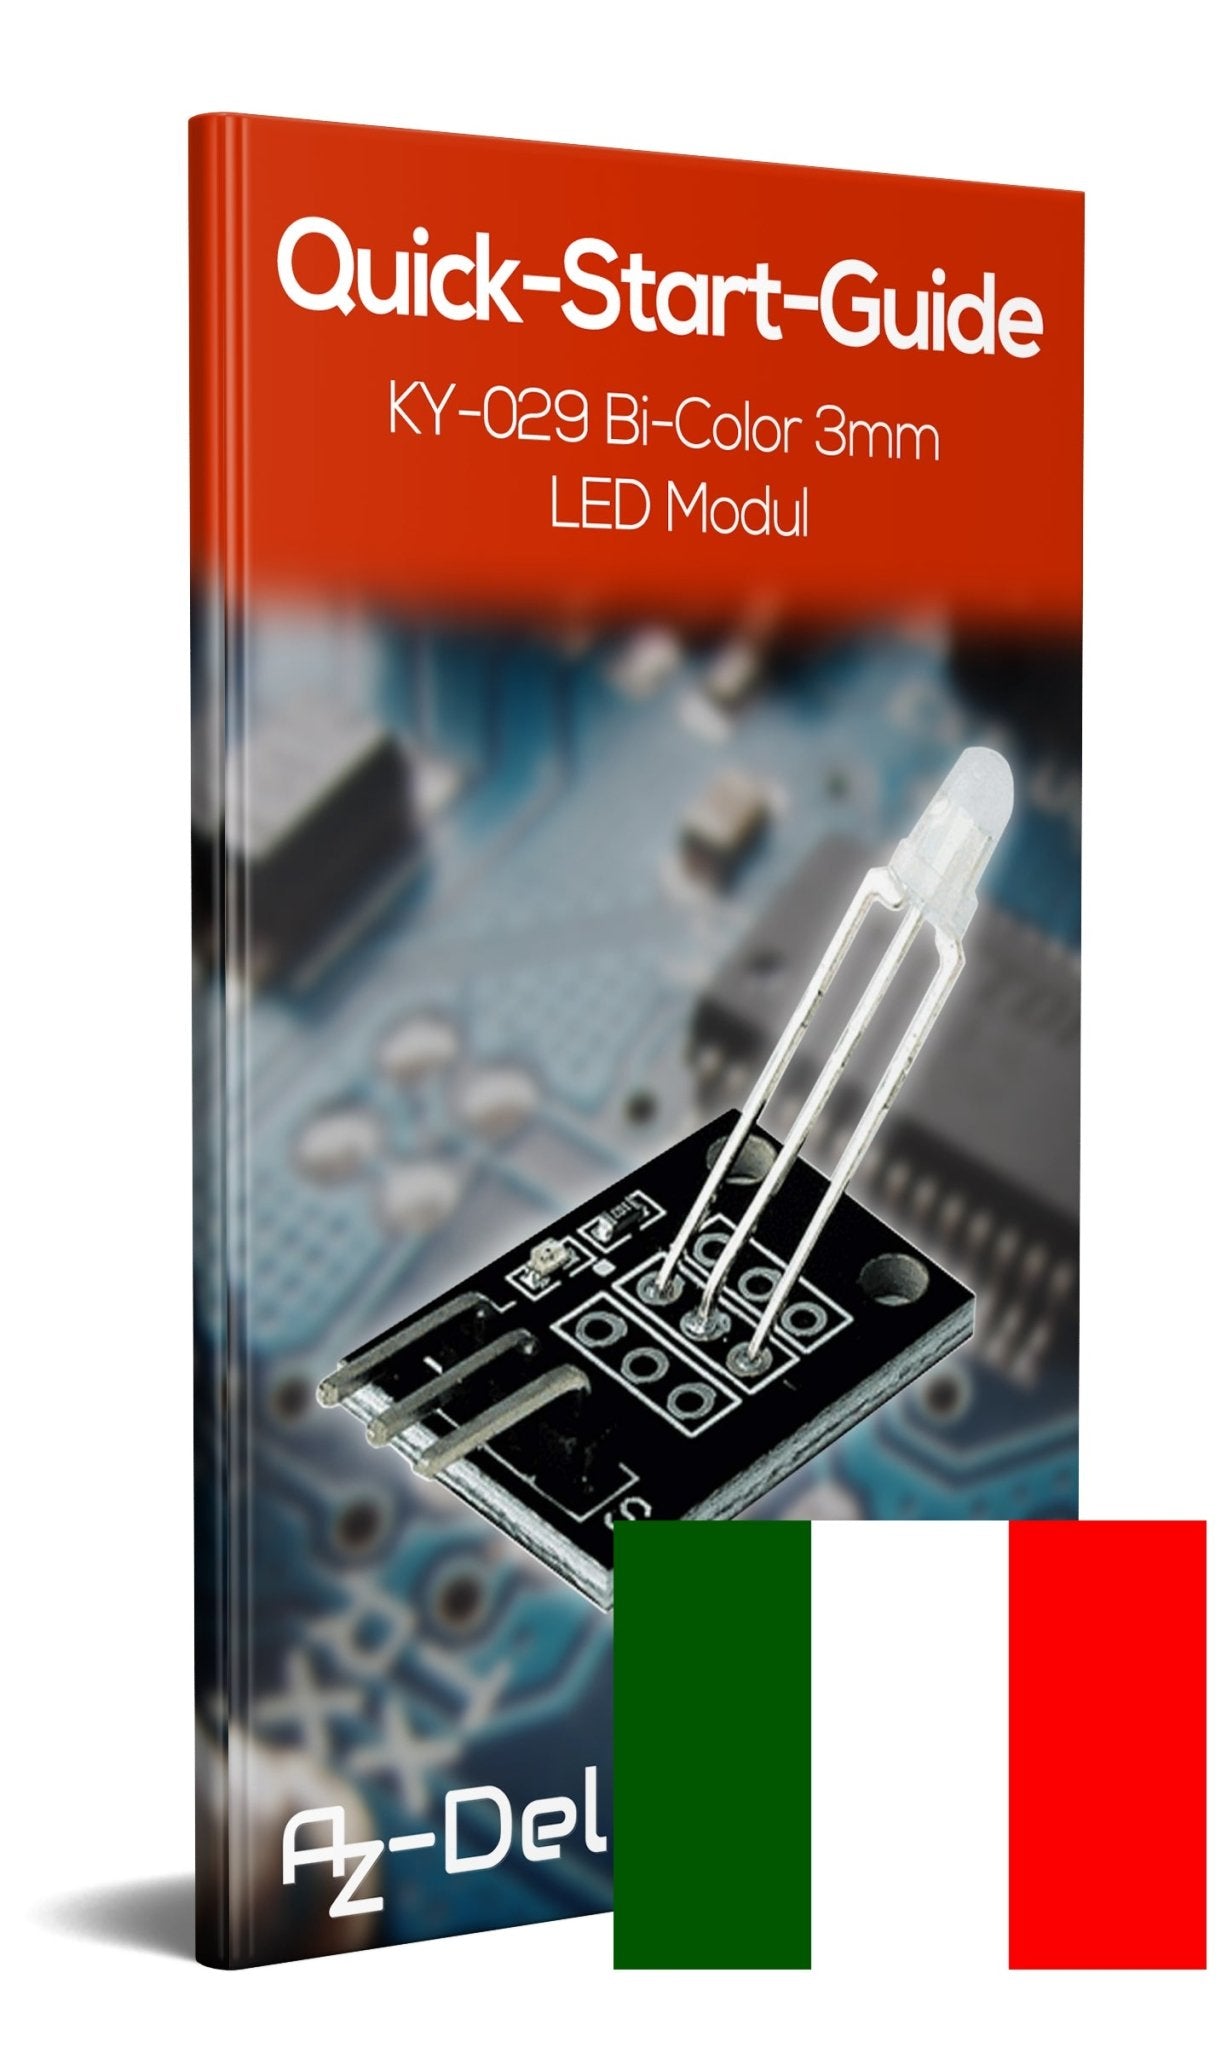 KY-029 Bi-Color LED Modul 3mm - AZ-Delivery